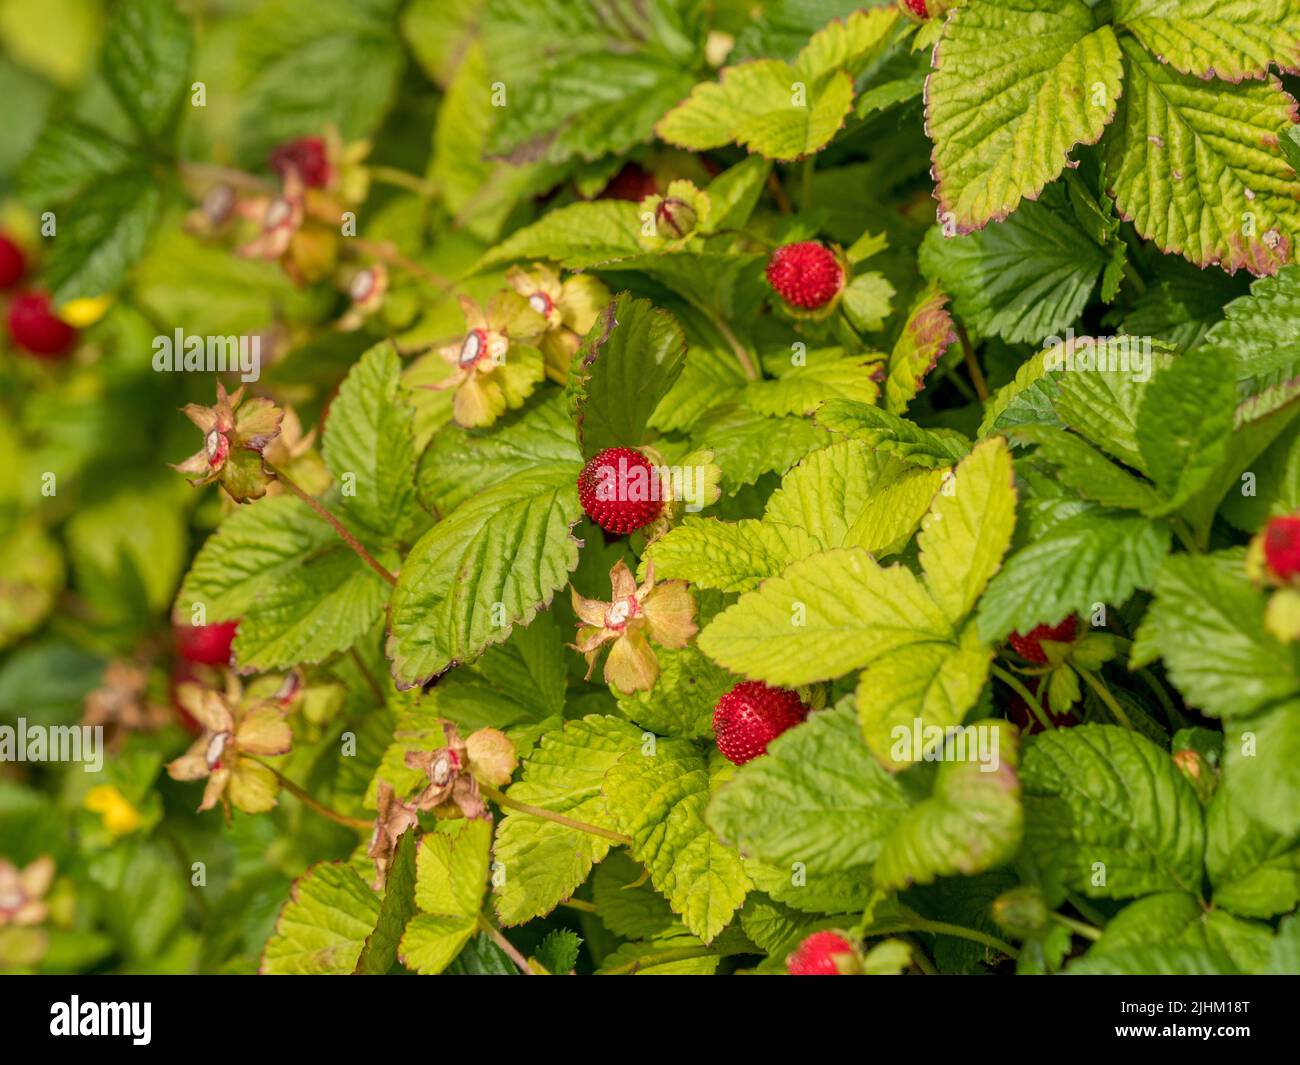 Wild strawberries growing in a UK garden. Stock Photo